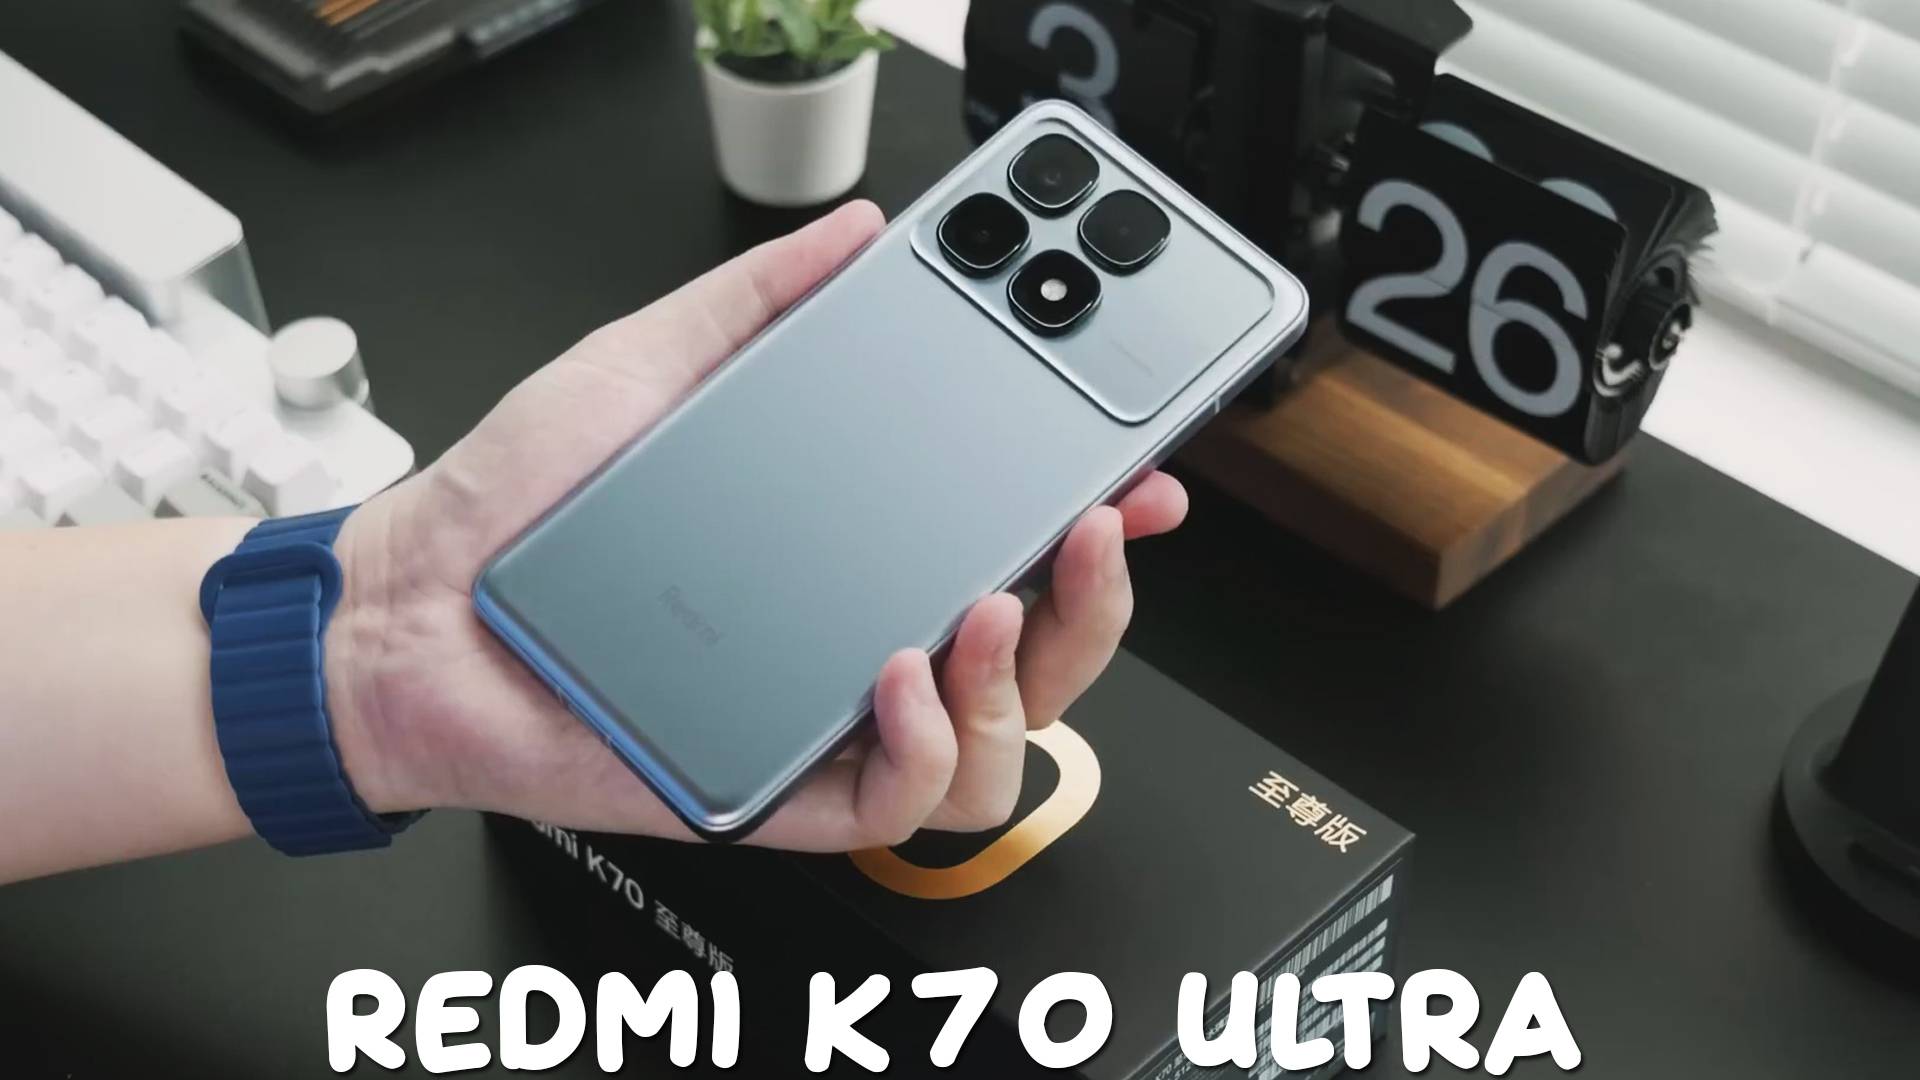 Redmi K70 Ultra первый обзор на русском